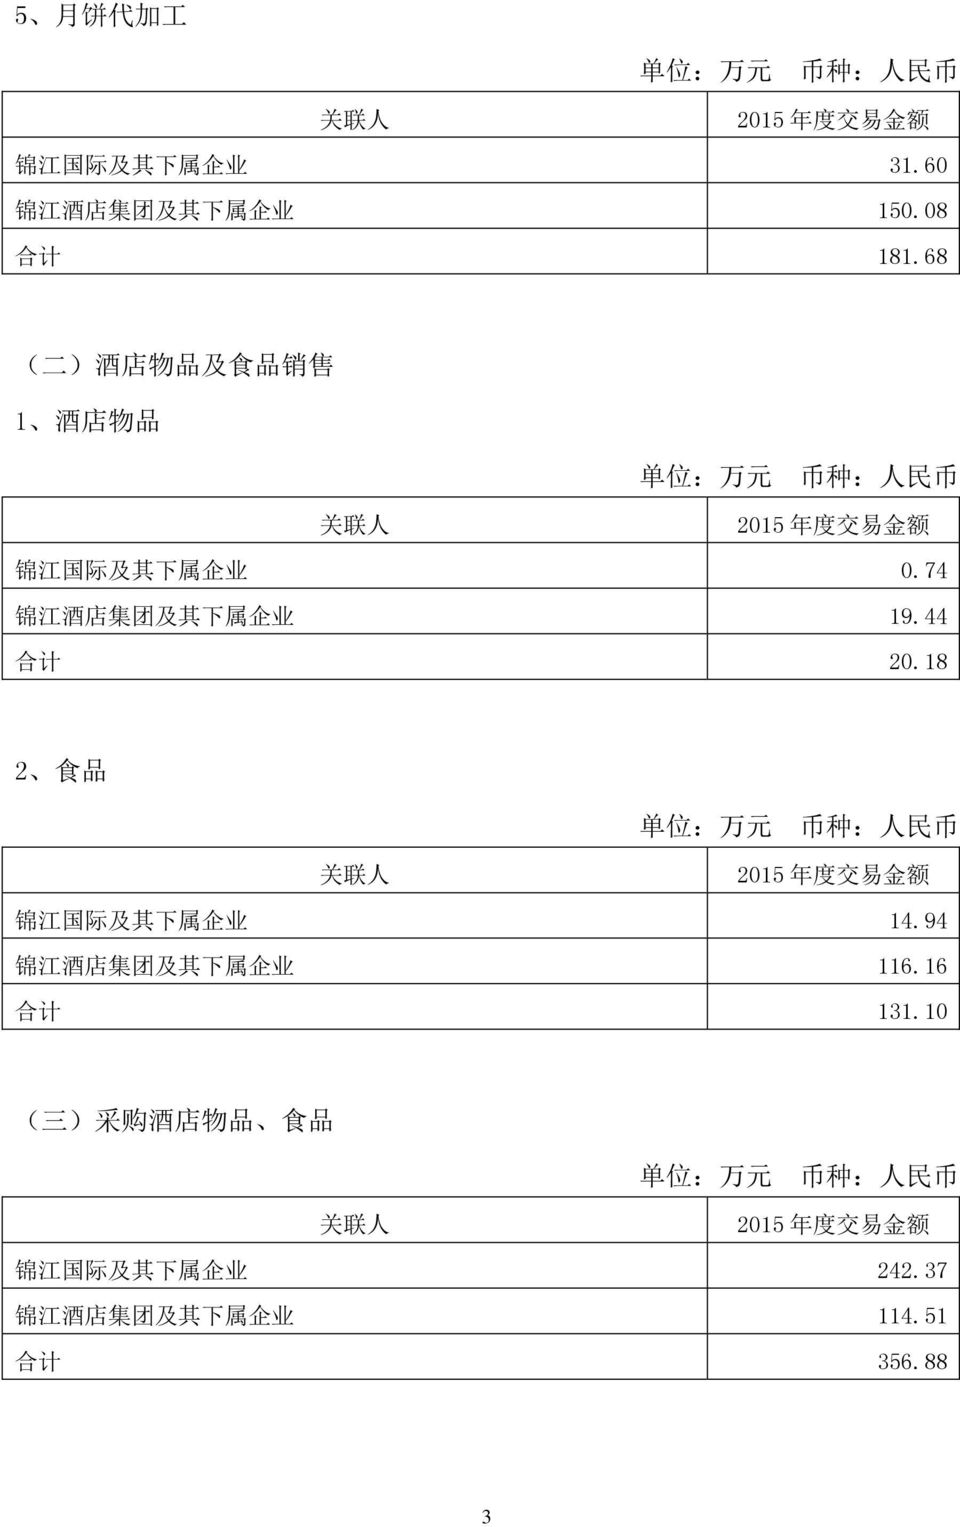 74 锦 江 酒 店 集 团 及 其 下 属 企 业 19.44 合 计 20.18 2 食 品 锦 江 国 际 及 其 下 属 企 业 14.